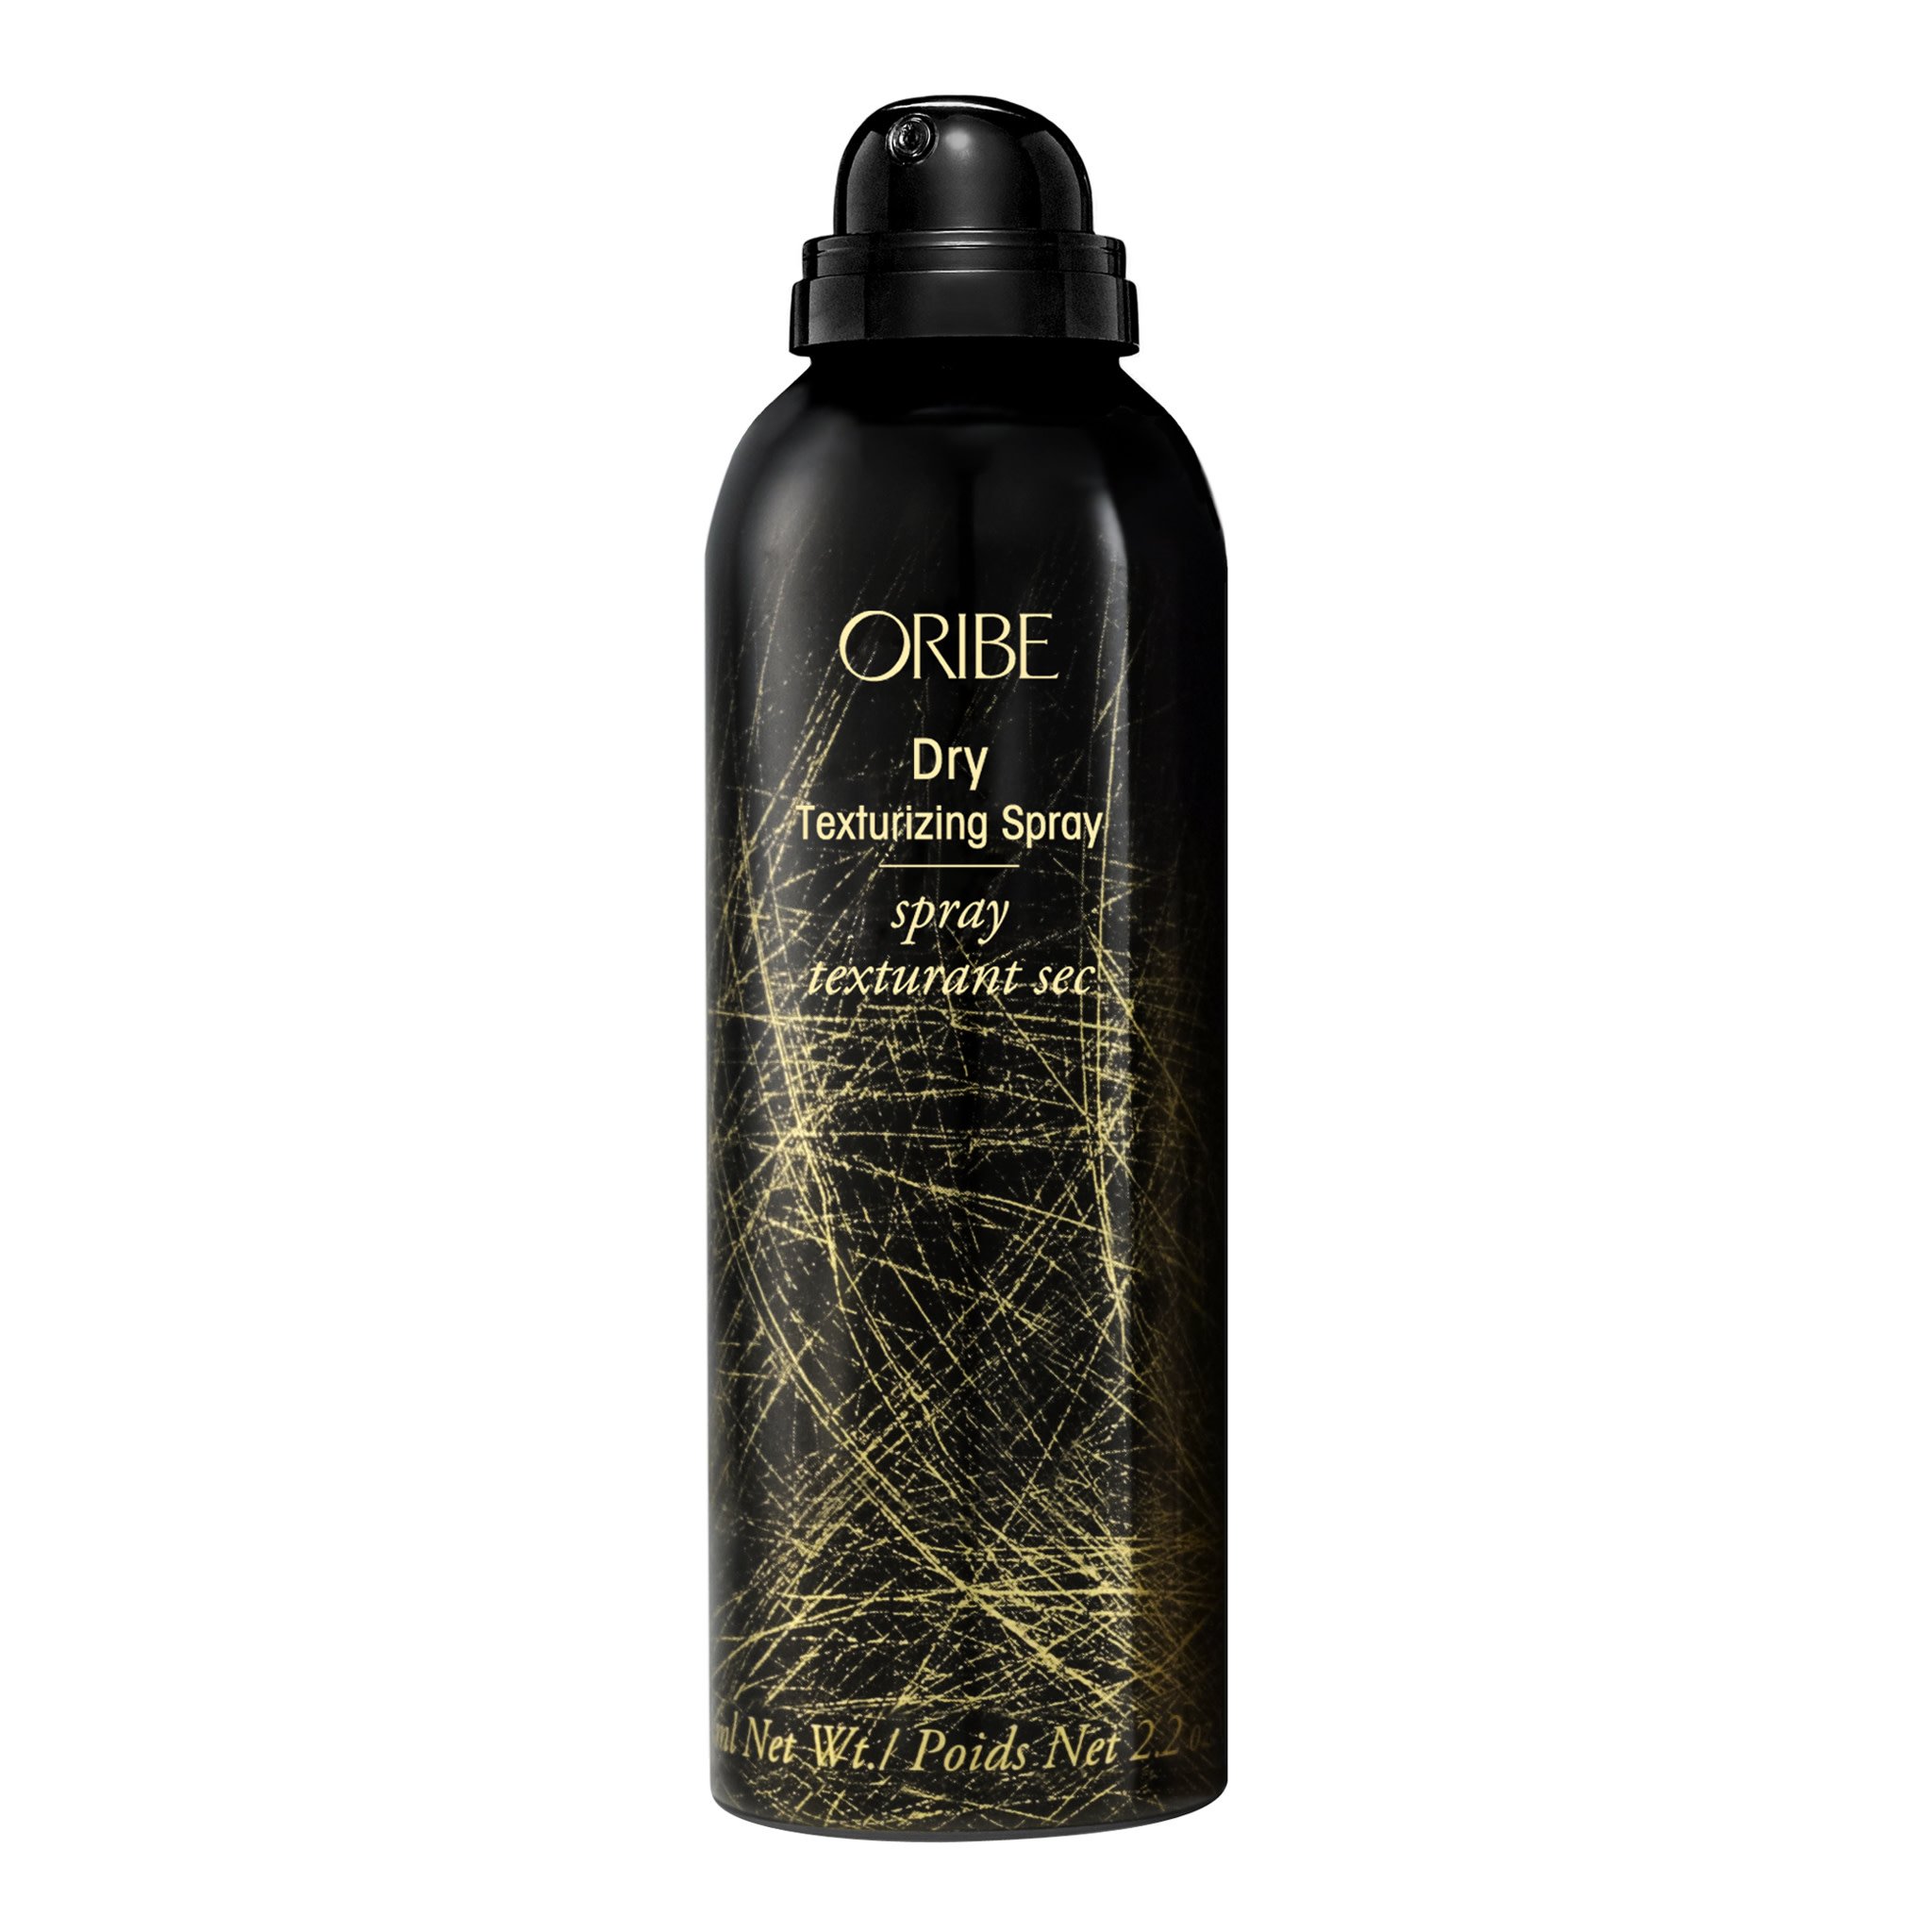 Oribe Dry
Texturizing Spray